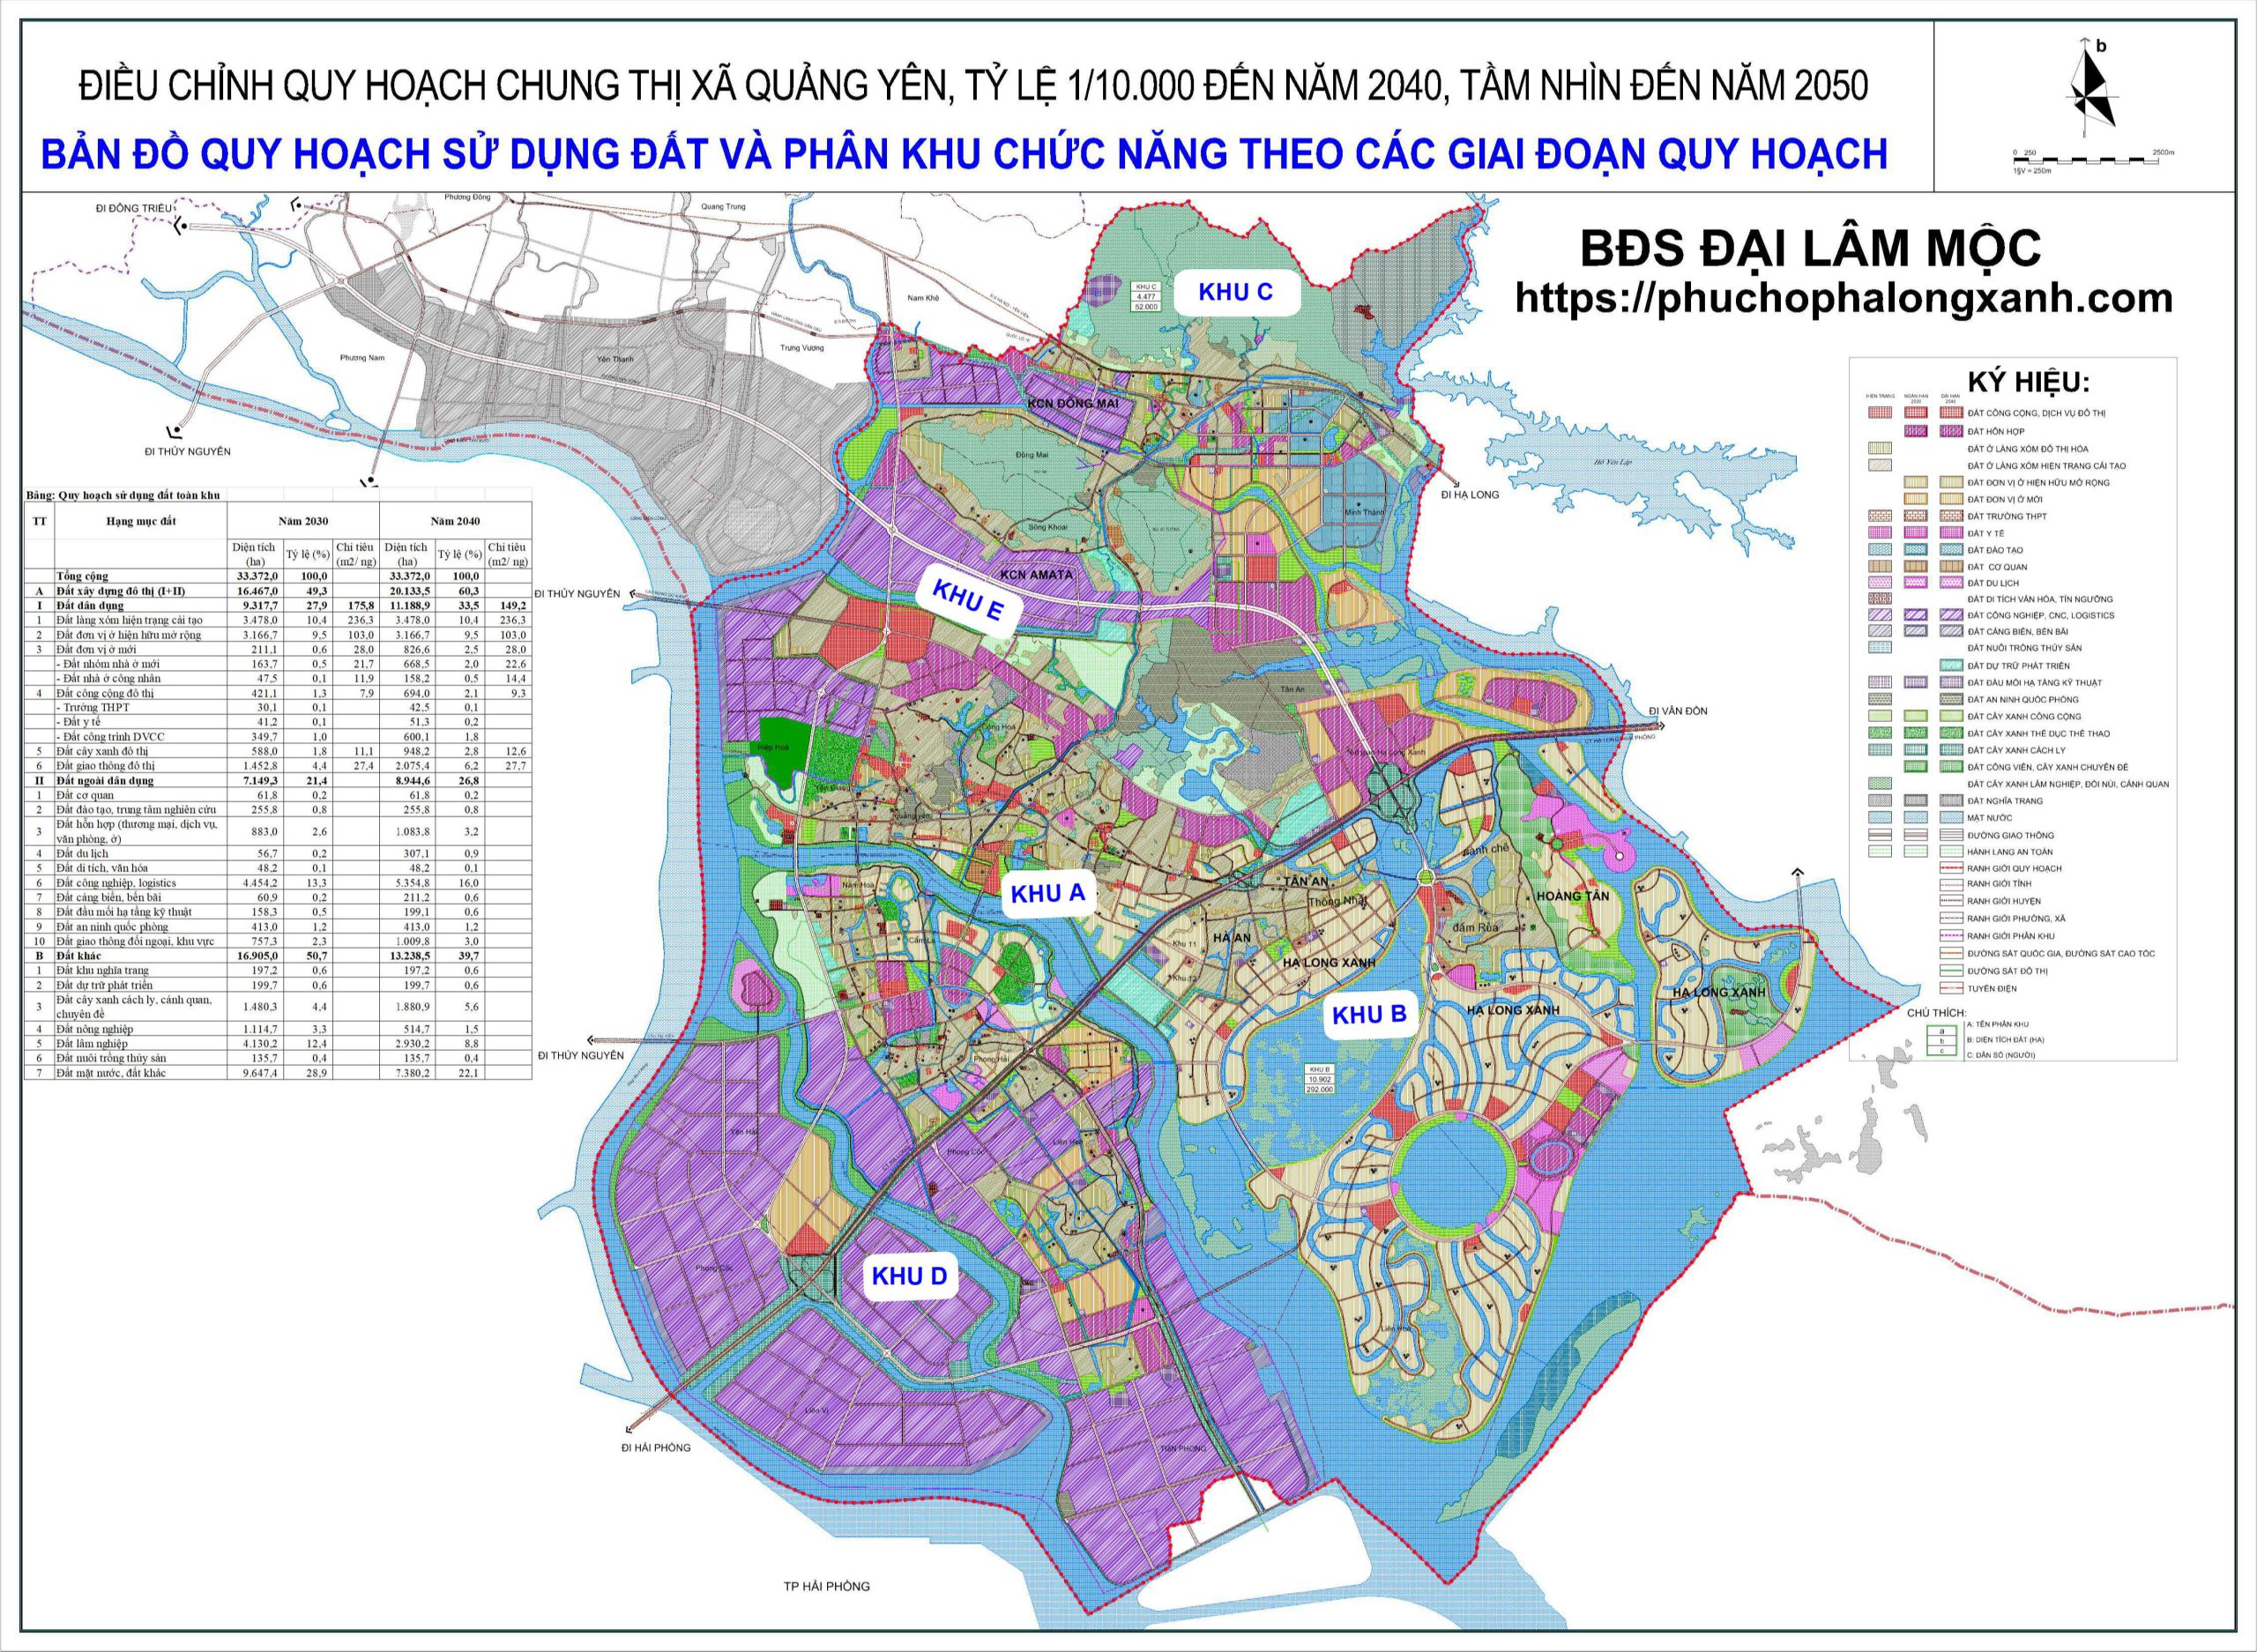 Quy hoạch chung thị xã Quảng Yên